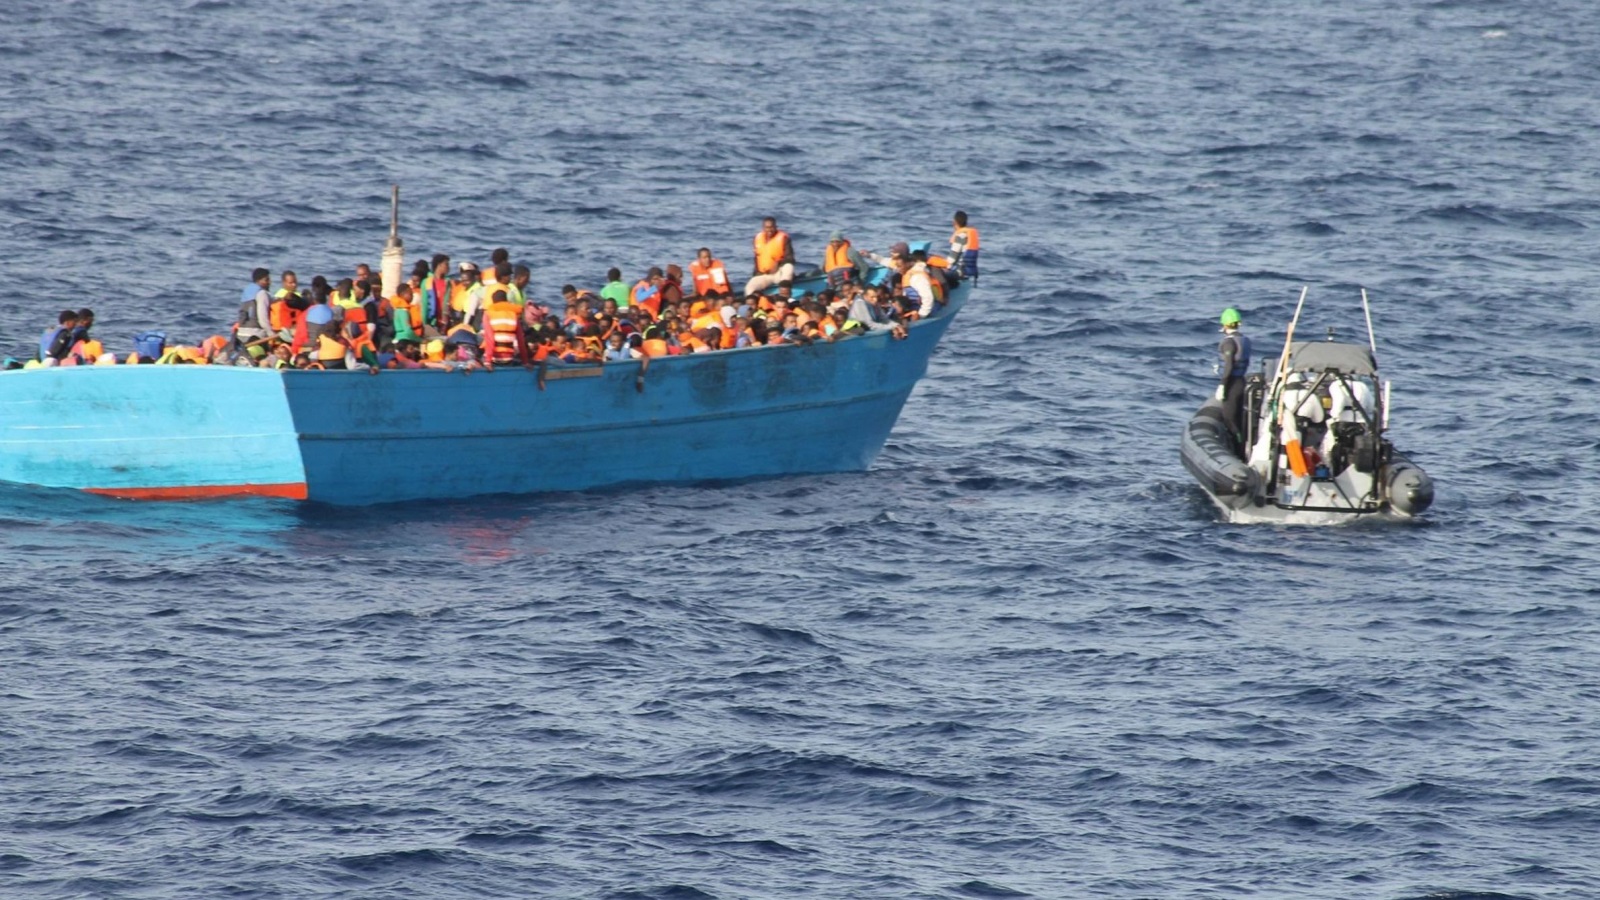 ‪آلاف اللاجئين يتعرضون للخطر وهم يتكدسون في قوارب المهربين المتهالكة‬ آلاف اللاجئين يتعرضون للخطر وهم يتكدسون في قوارب المهربين المتهالكة (الأوروبية)